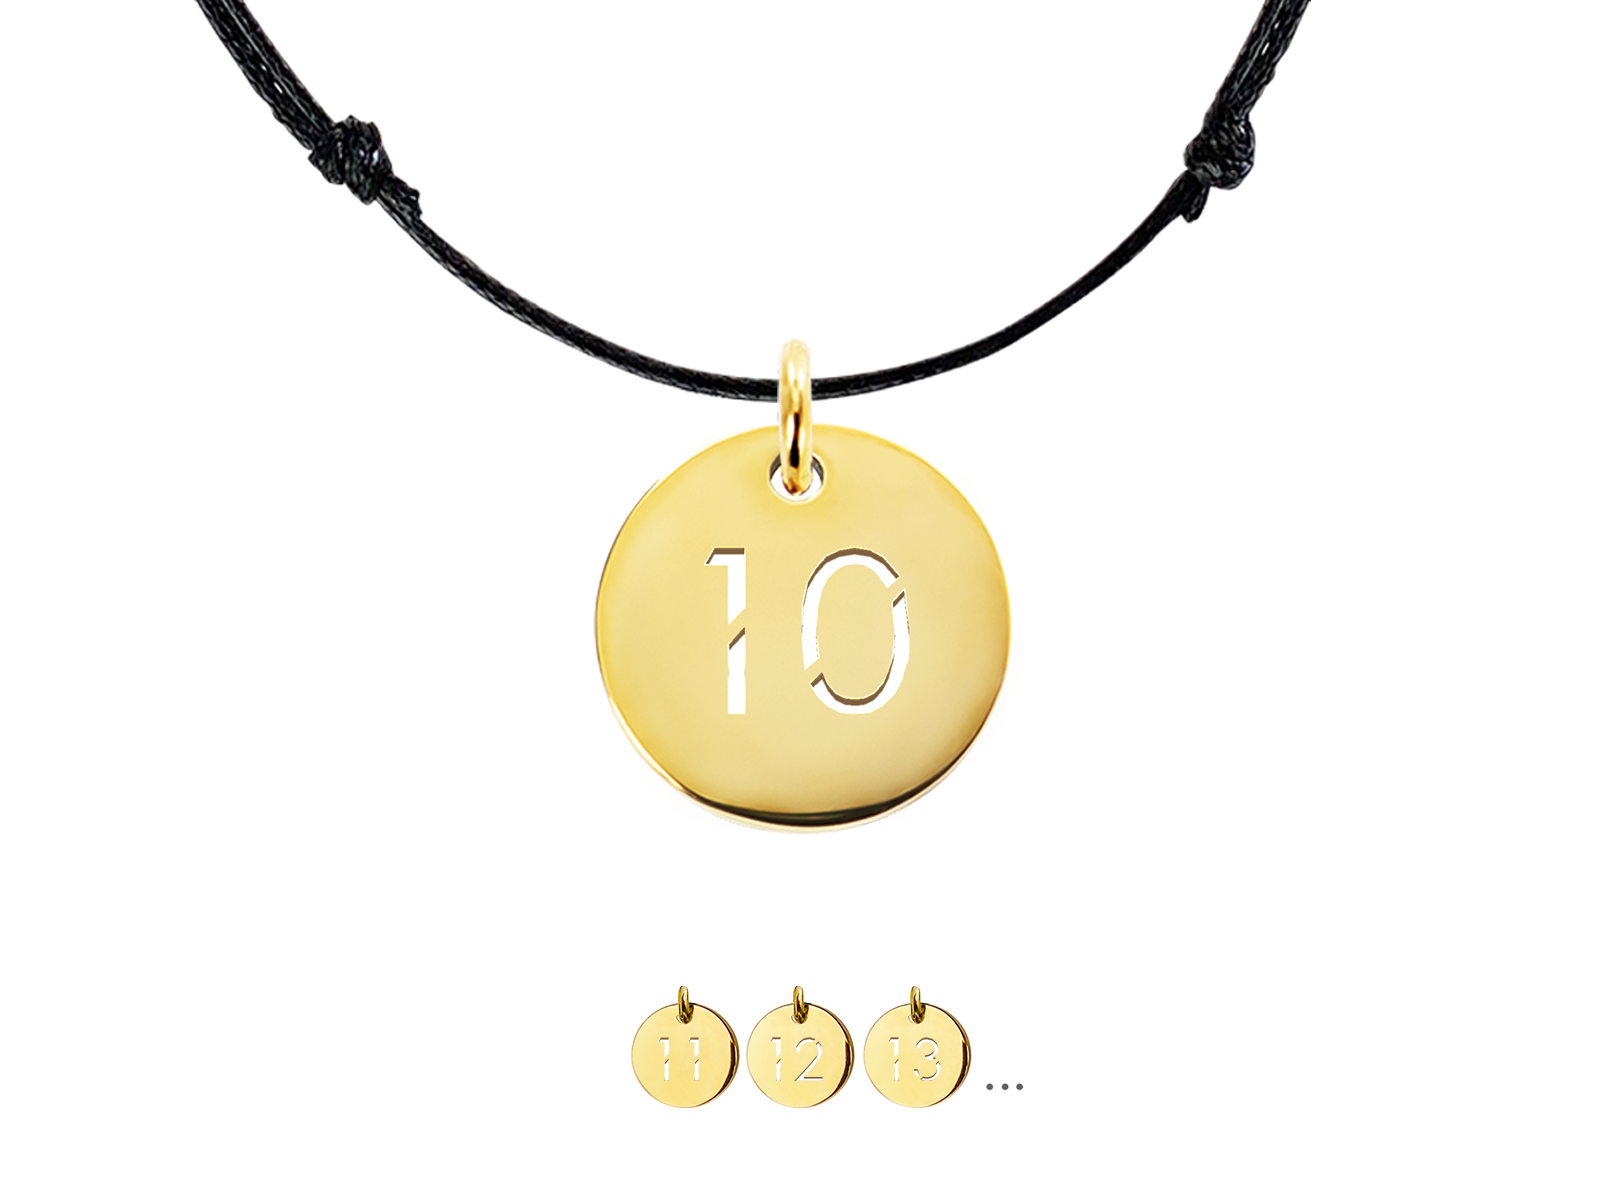 Collier cordon ajustable décoré d'une médaille numéro découpé (12mm) en acier inoxydable doré